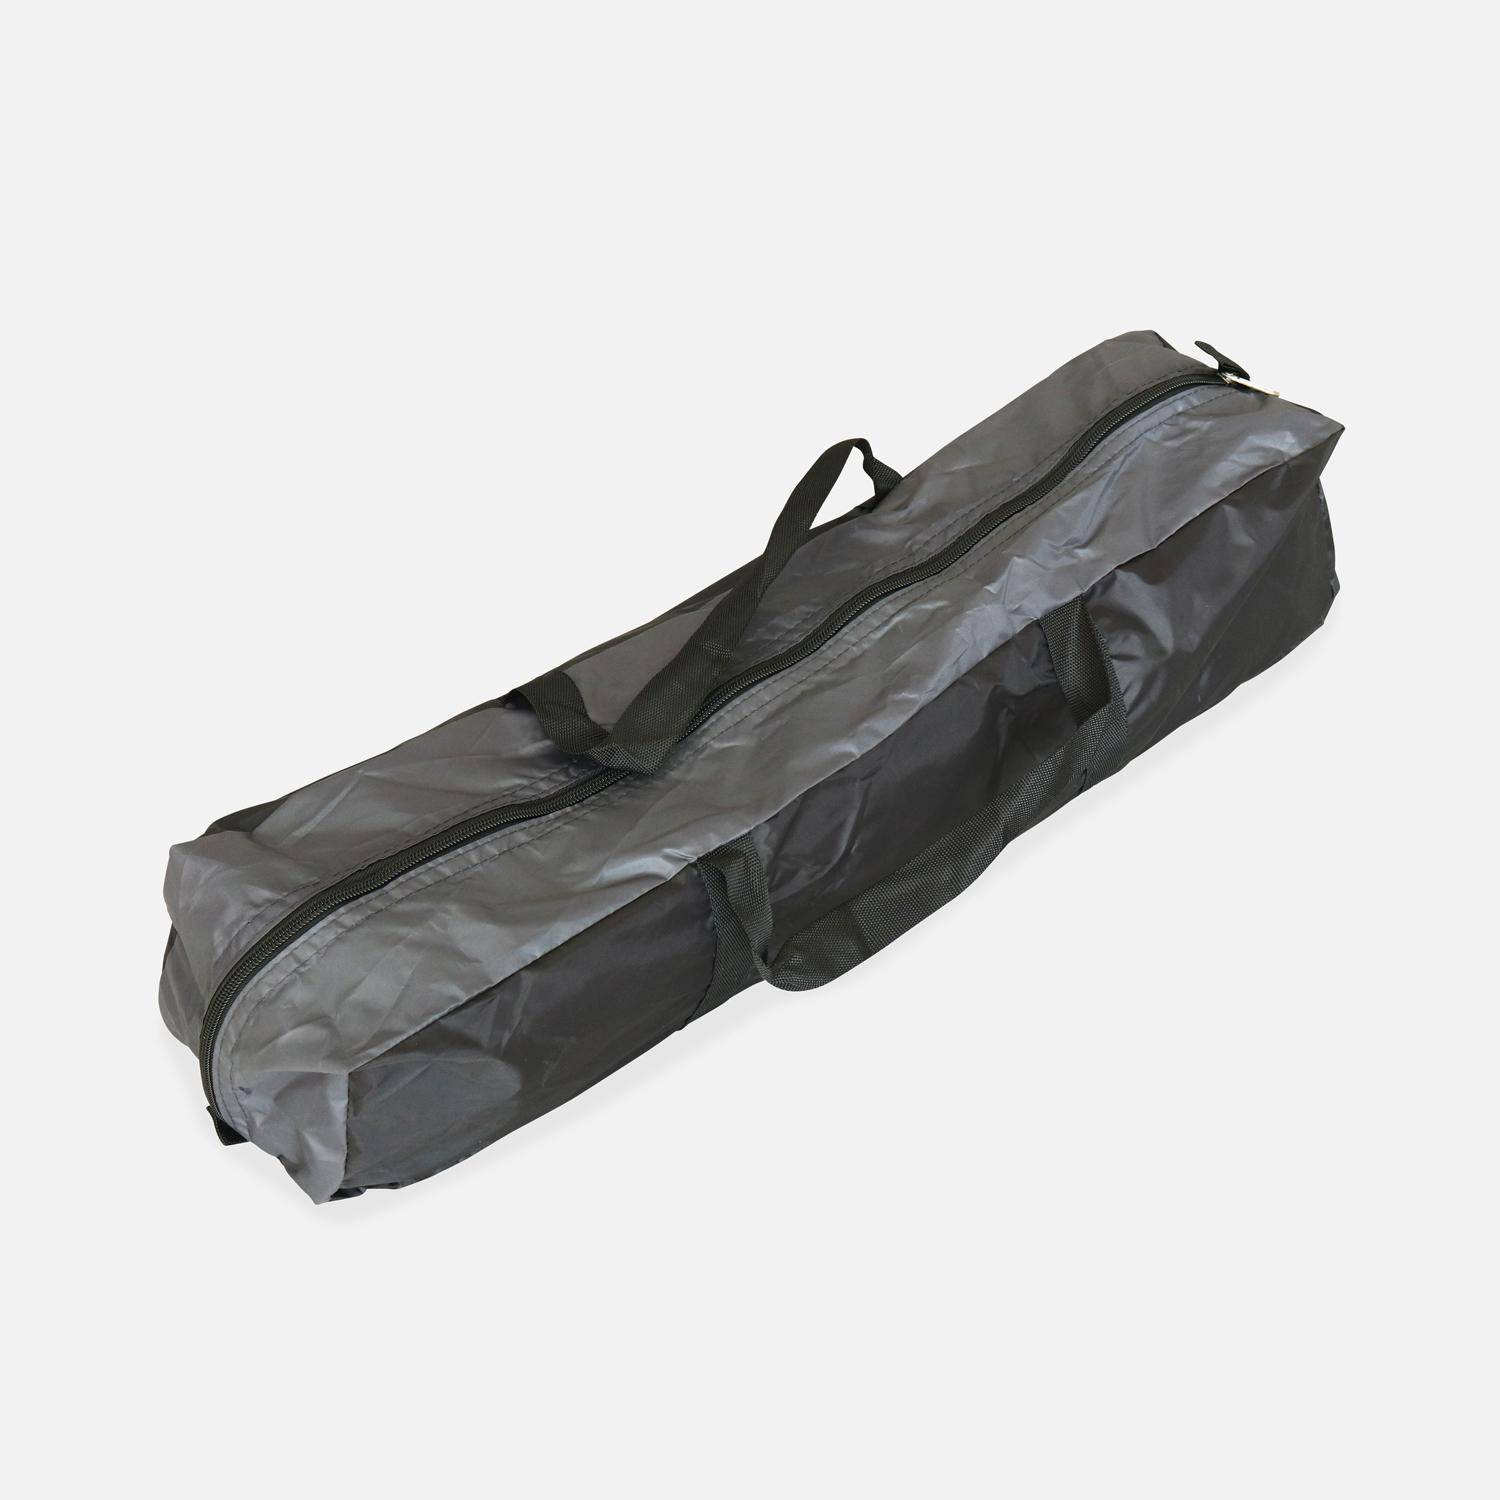 Trampoline 305cm bleu avec pack d'accessoires + Tente de camping avec sac de transport Photo6